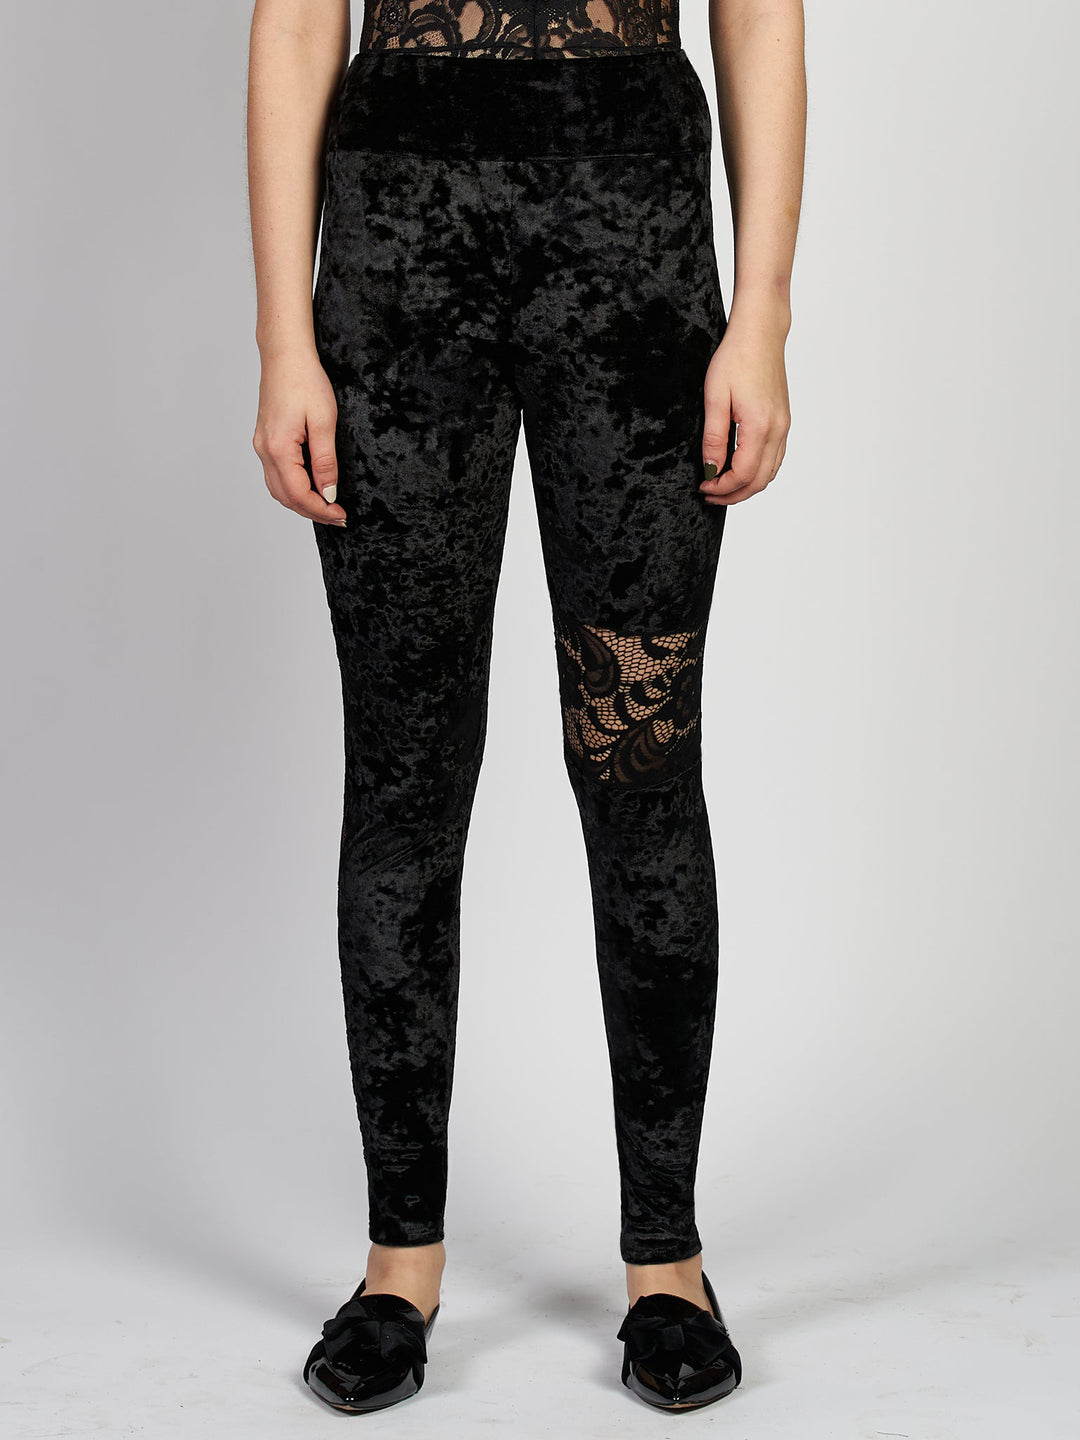 Black velvet leggings with lace 